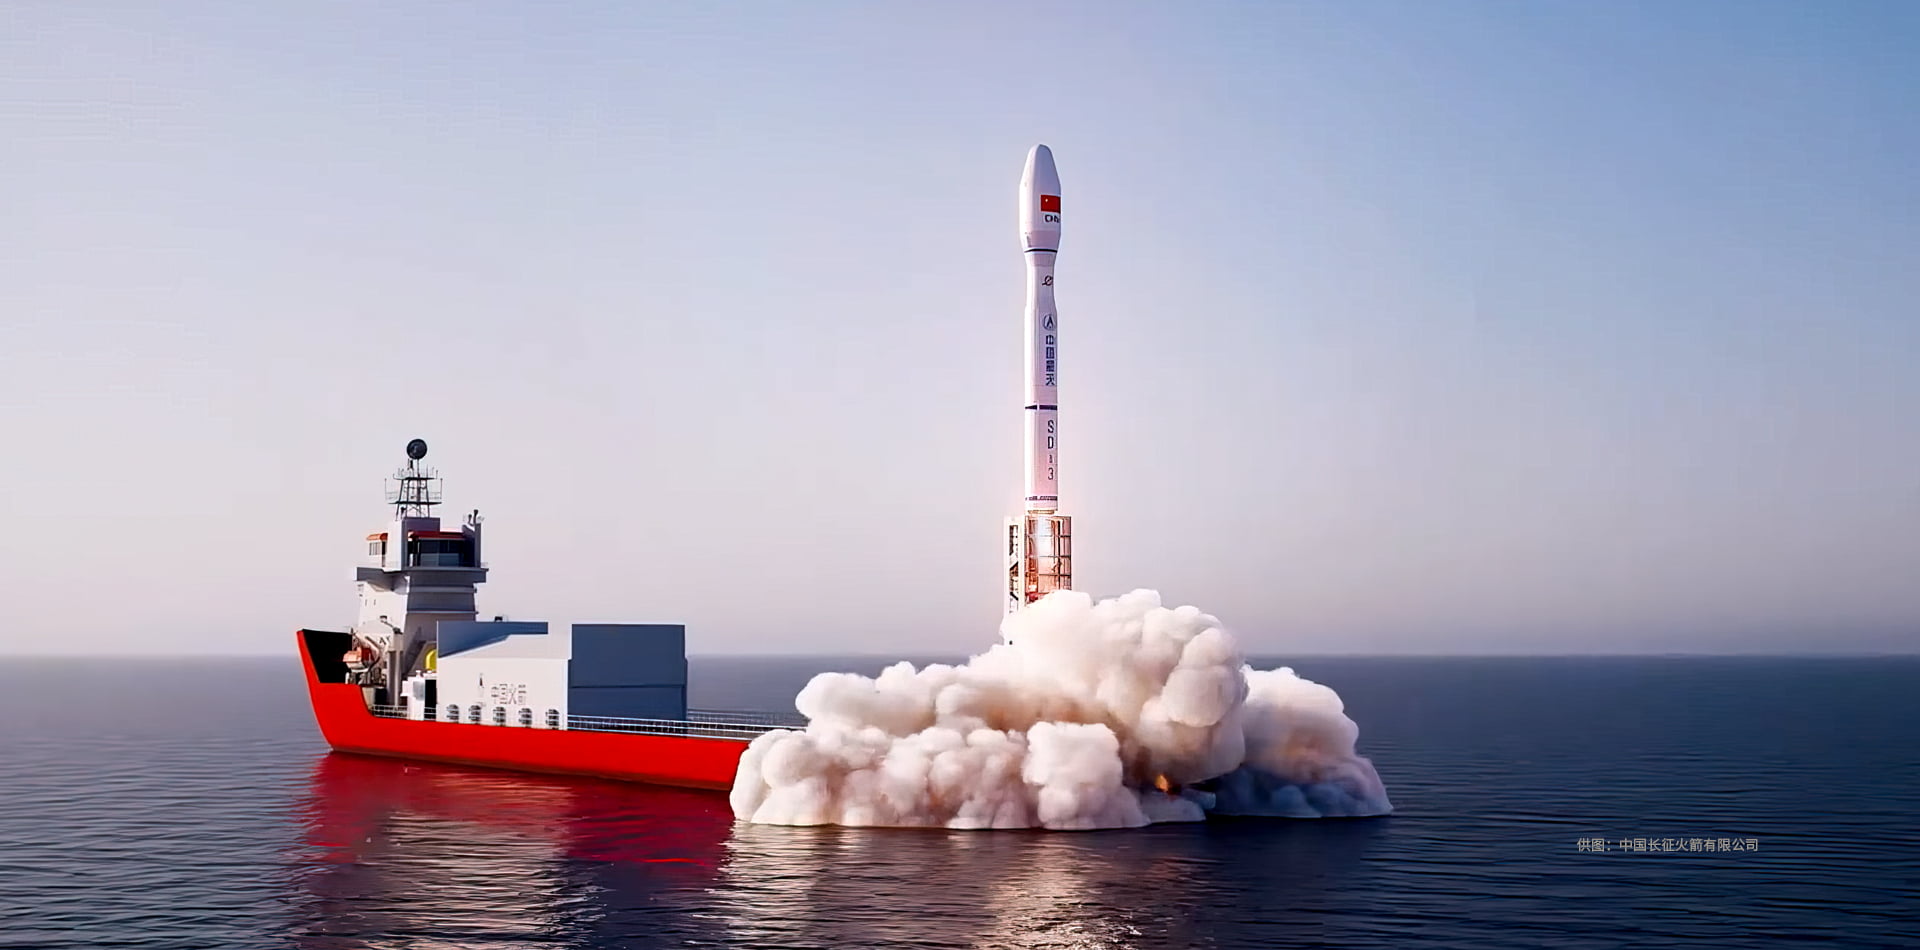 贝伦斯BEHRENS-原创ORIGINAL系列-星舰Ⅱ中国火箭联名款StarshipⅡ China Rocket.jpg